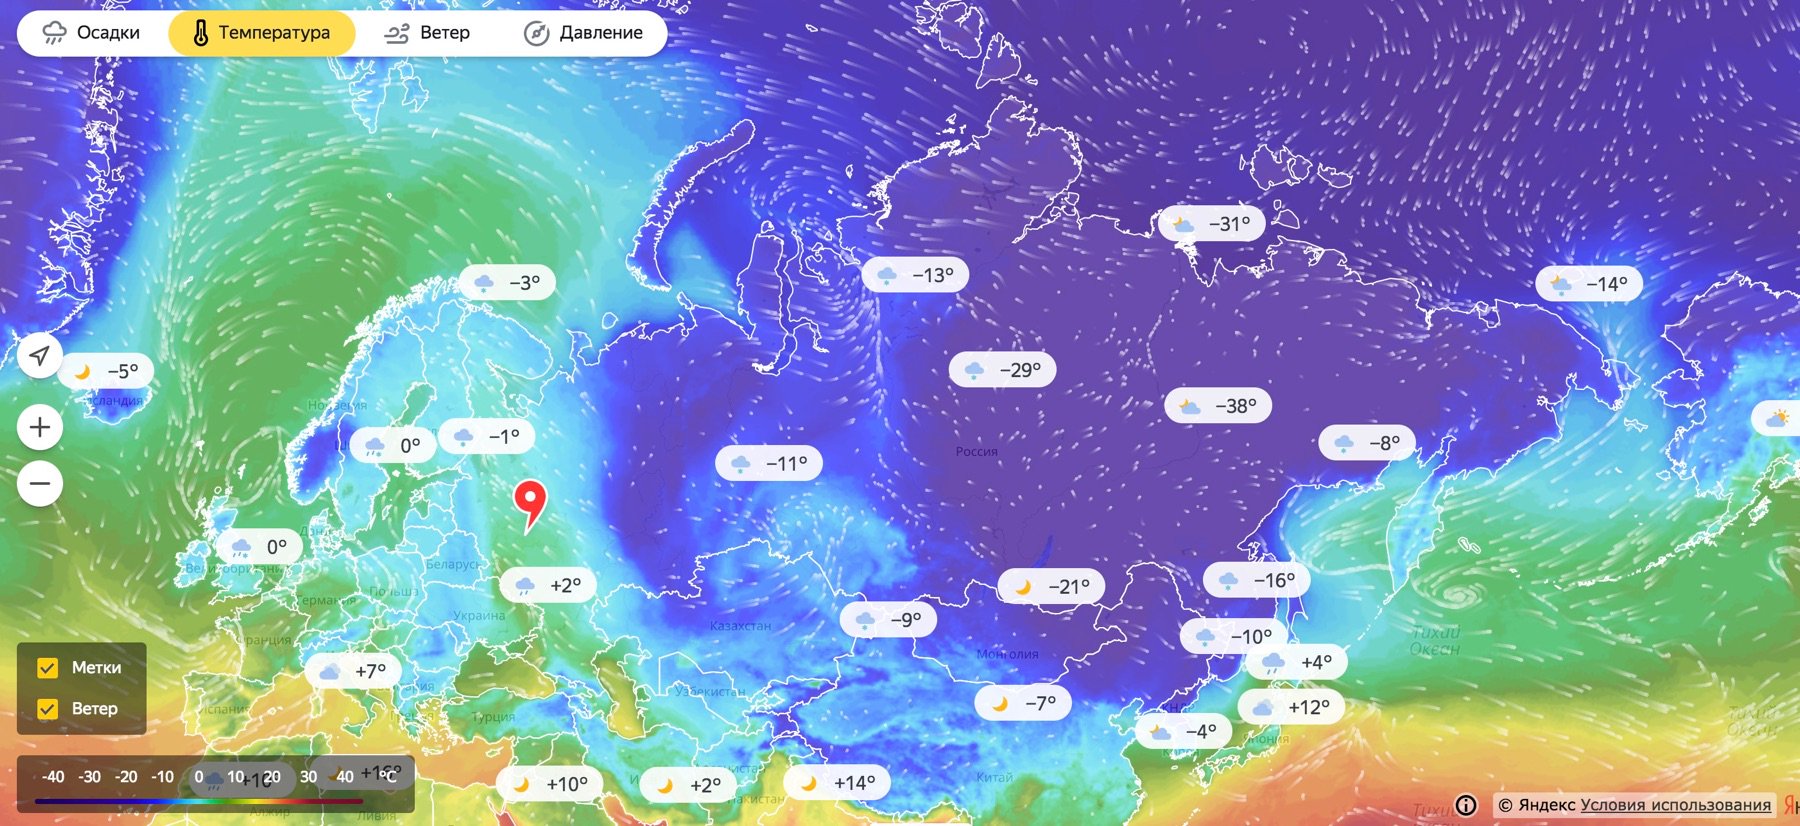 Прогноз осадков в москве на карте. Карта осадков. Карта осадков Москва. Карта осадков с ветром. Осадки на карте в реальном времени.